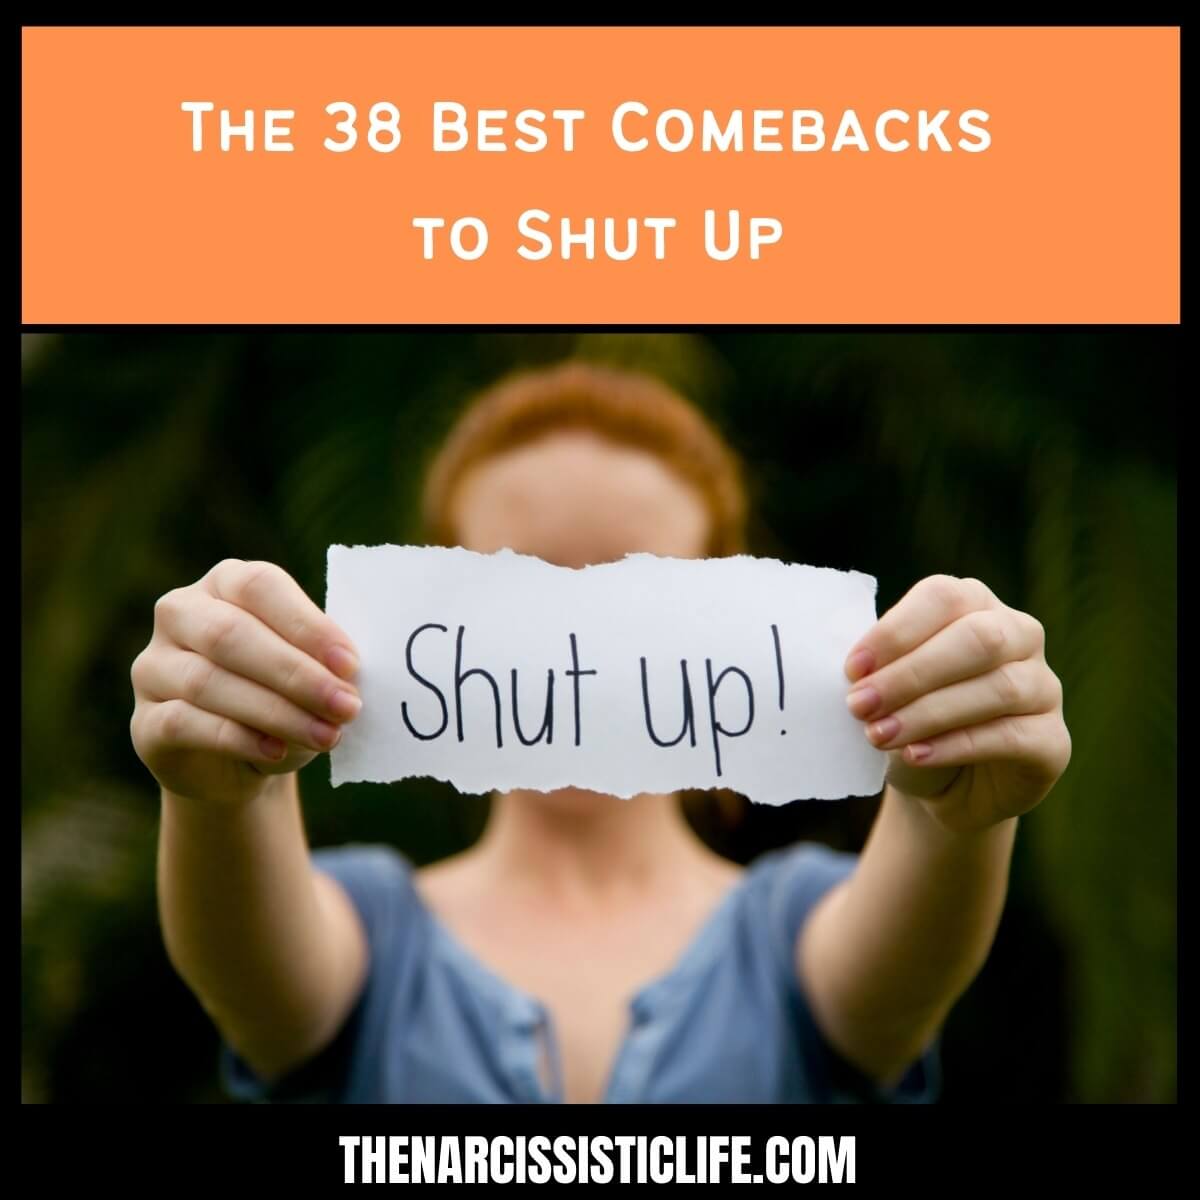 Kas yra geras "Shut Up" sugrįžimas?